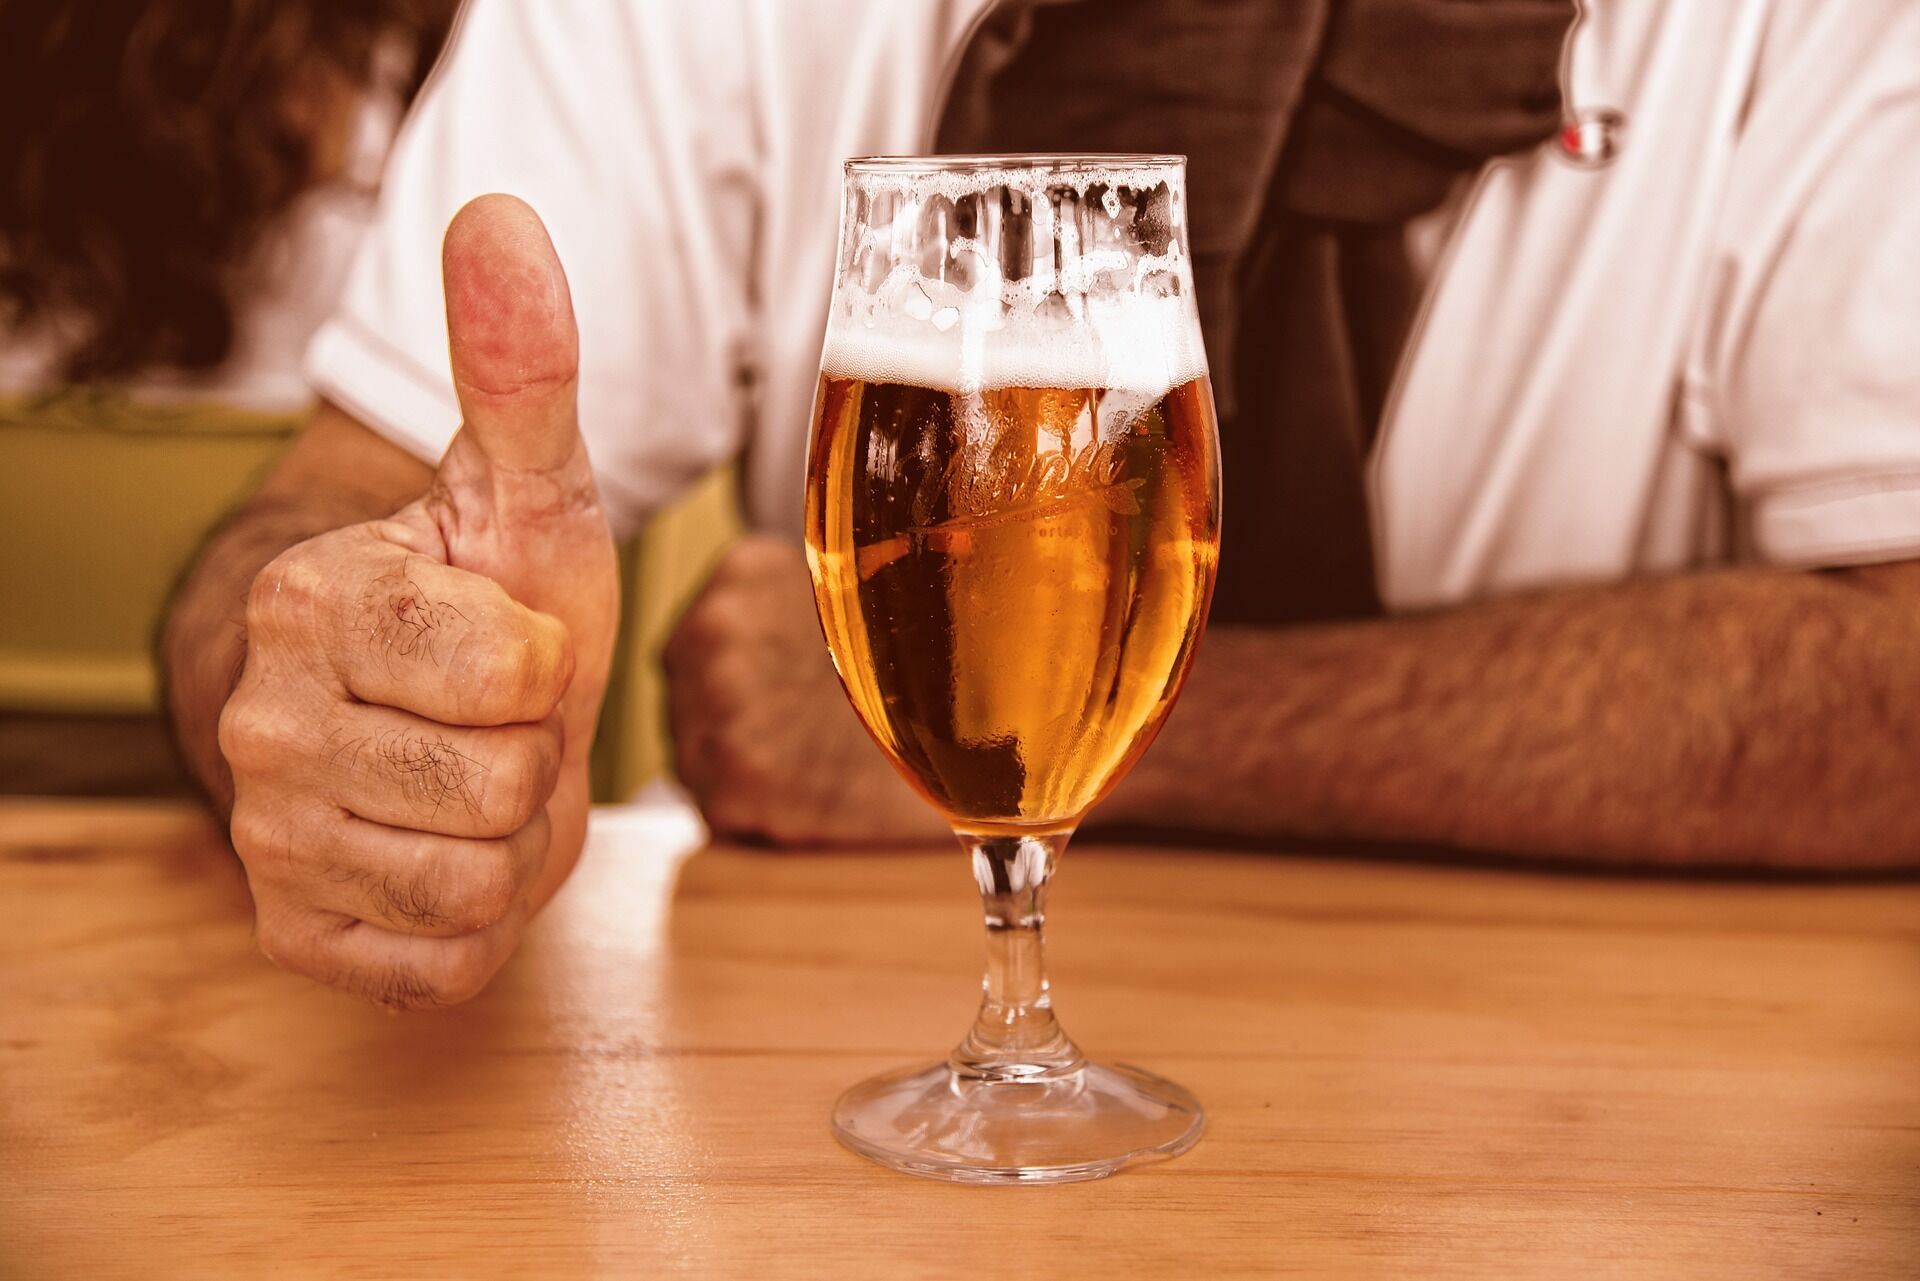 Немцы для заказа пива используют разные жесты.